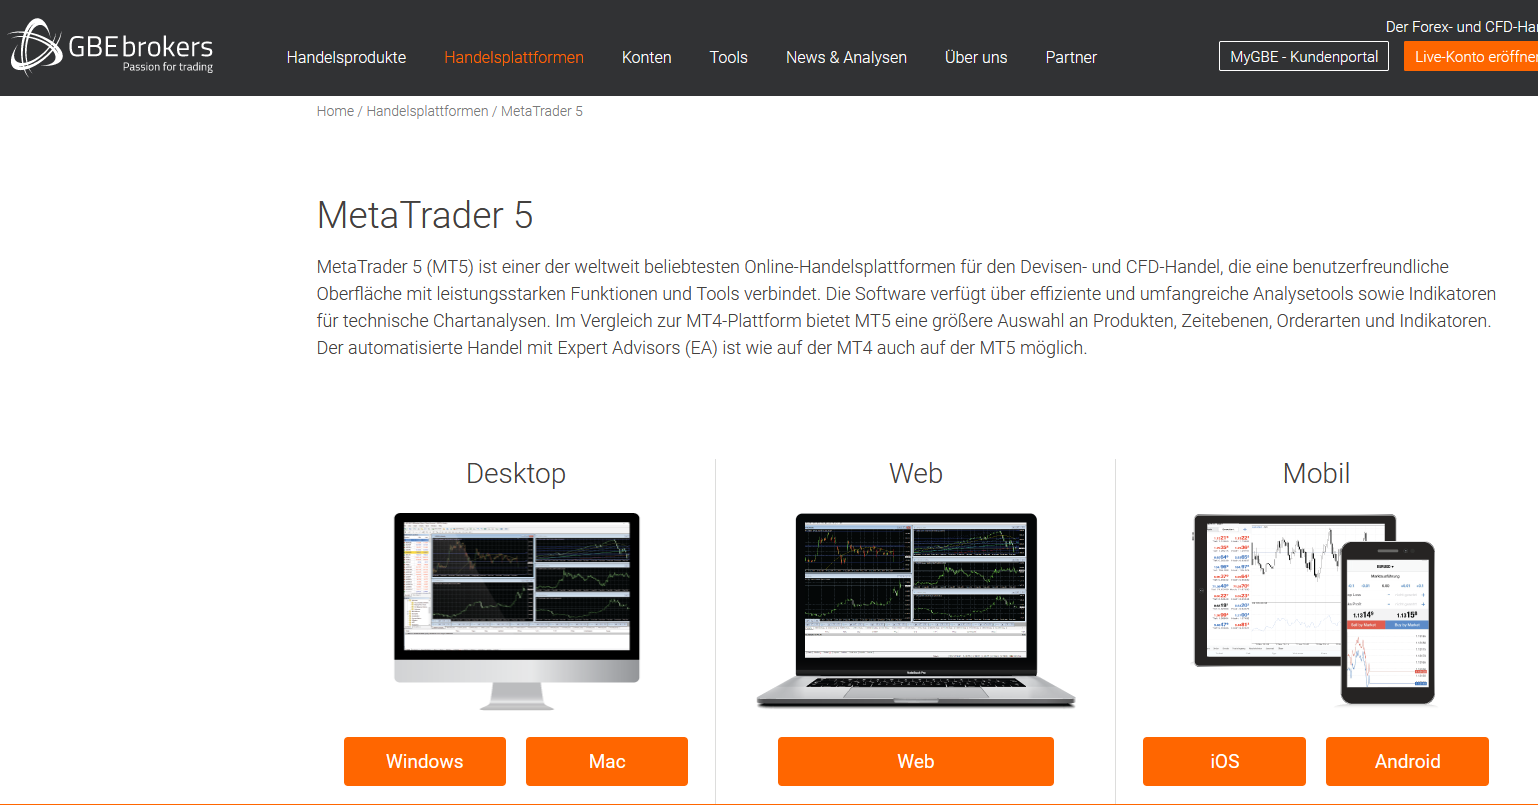 Metatrader 5 auf der GBE Brokers Website